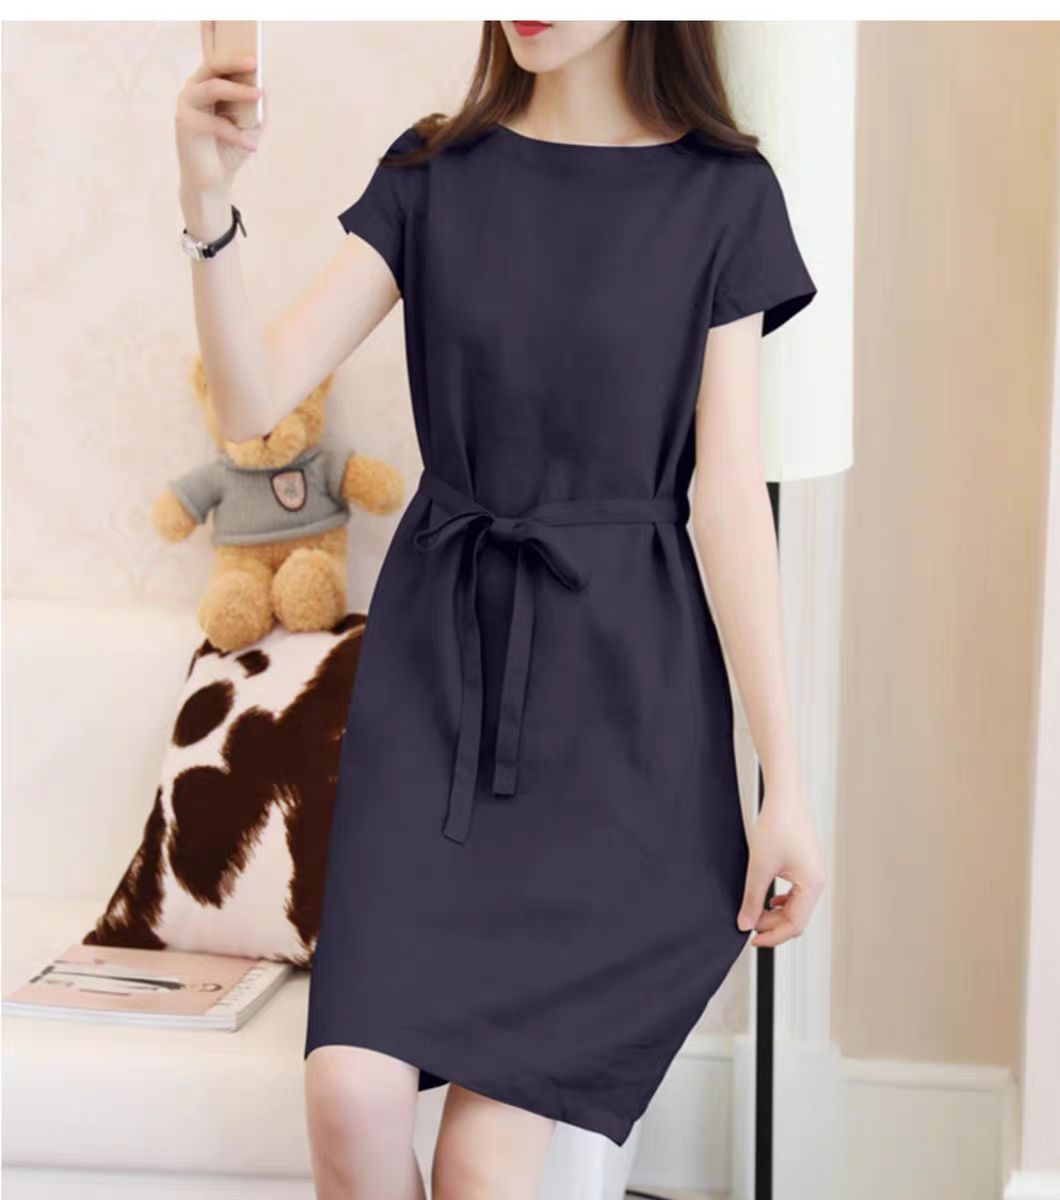 Đầm suông linen tay ngắn cổ tròn kèm đai rời, chất linen mềm mát, style Hàn thời trang Đũi Việt